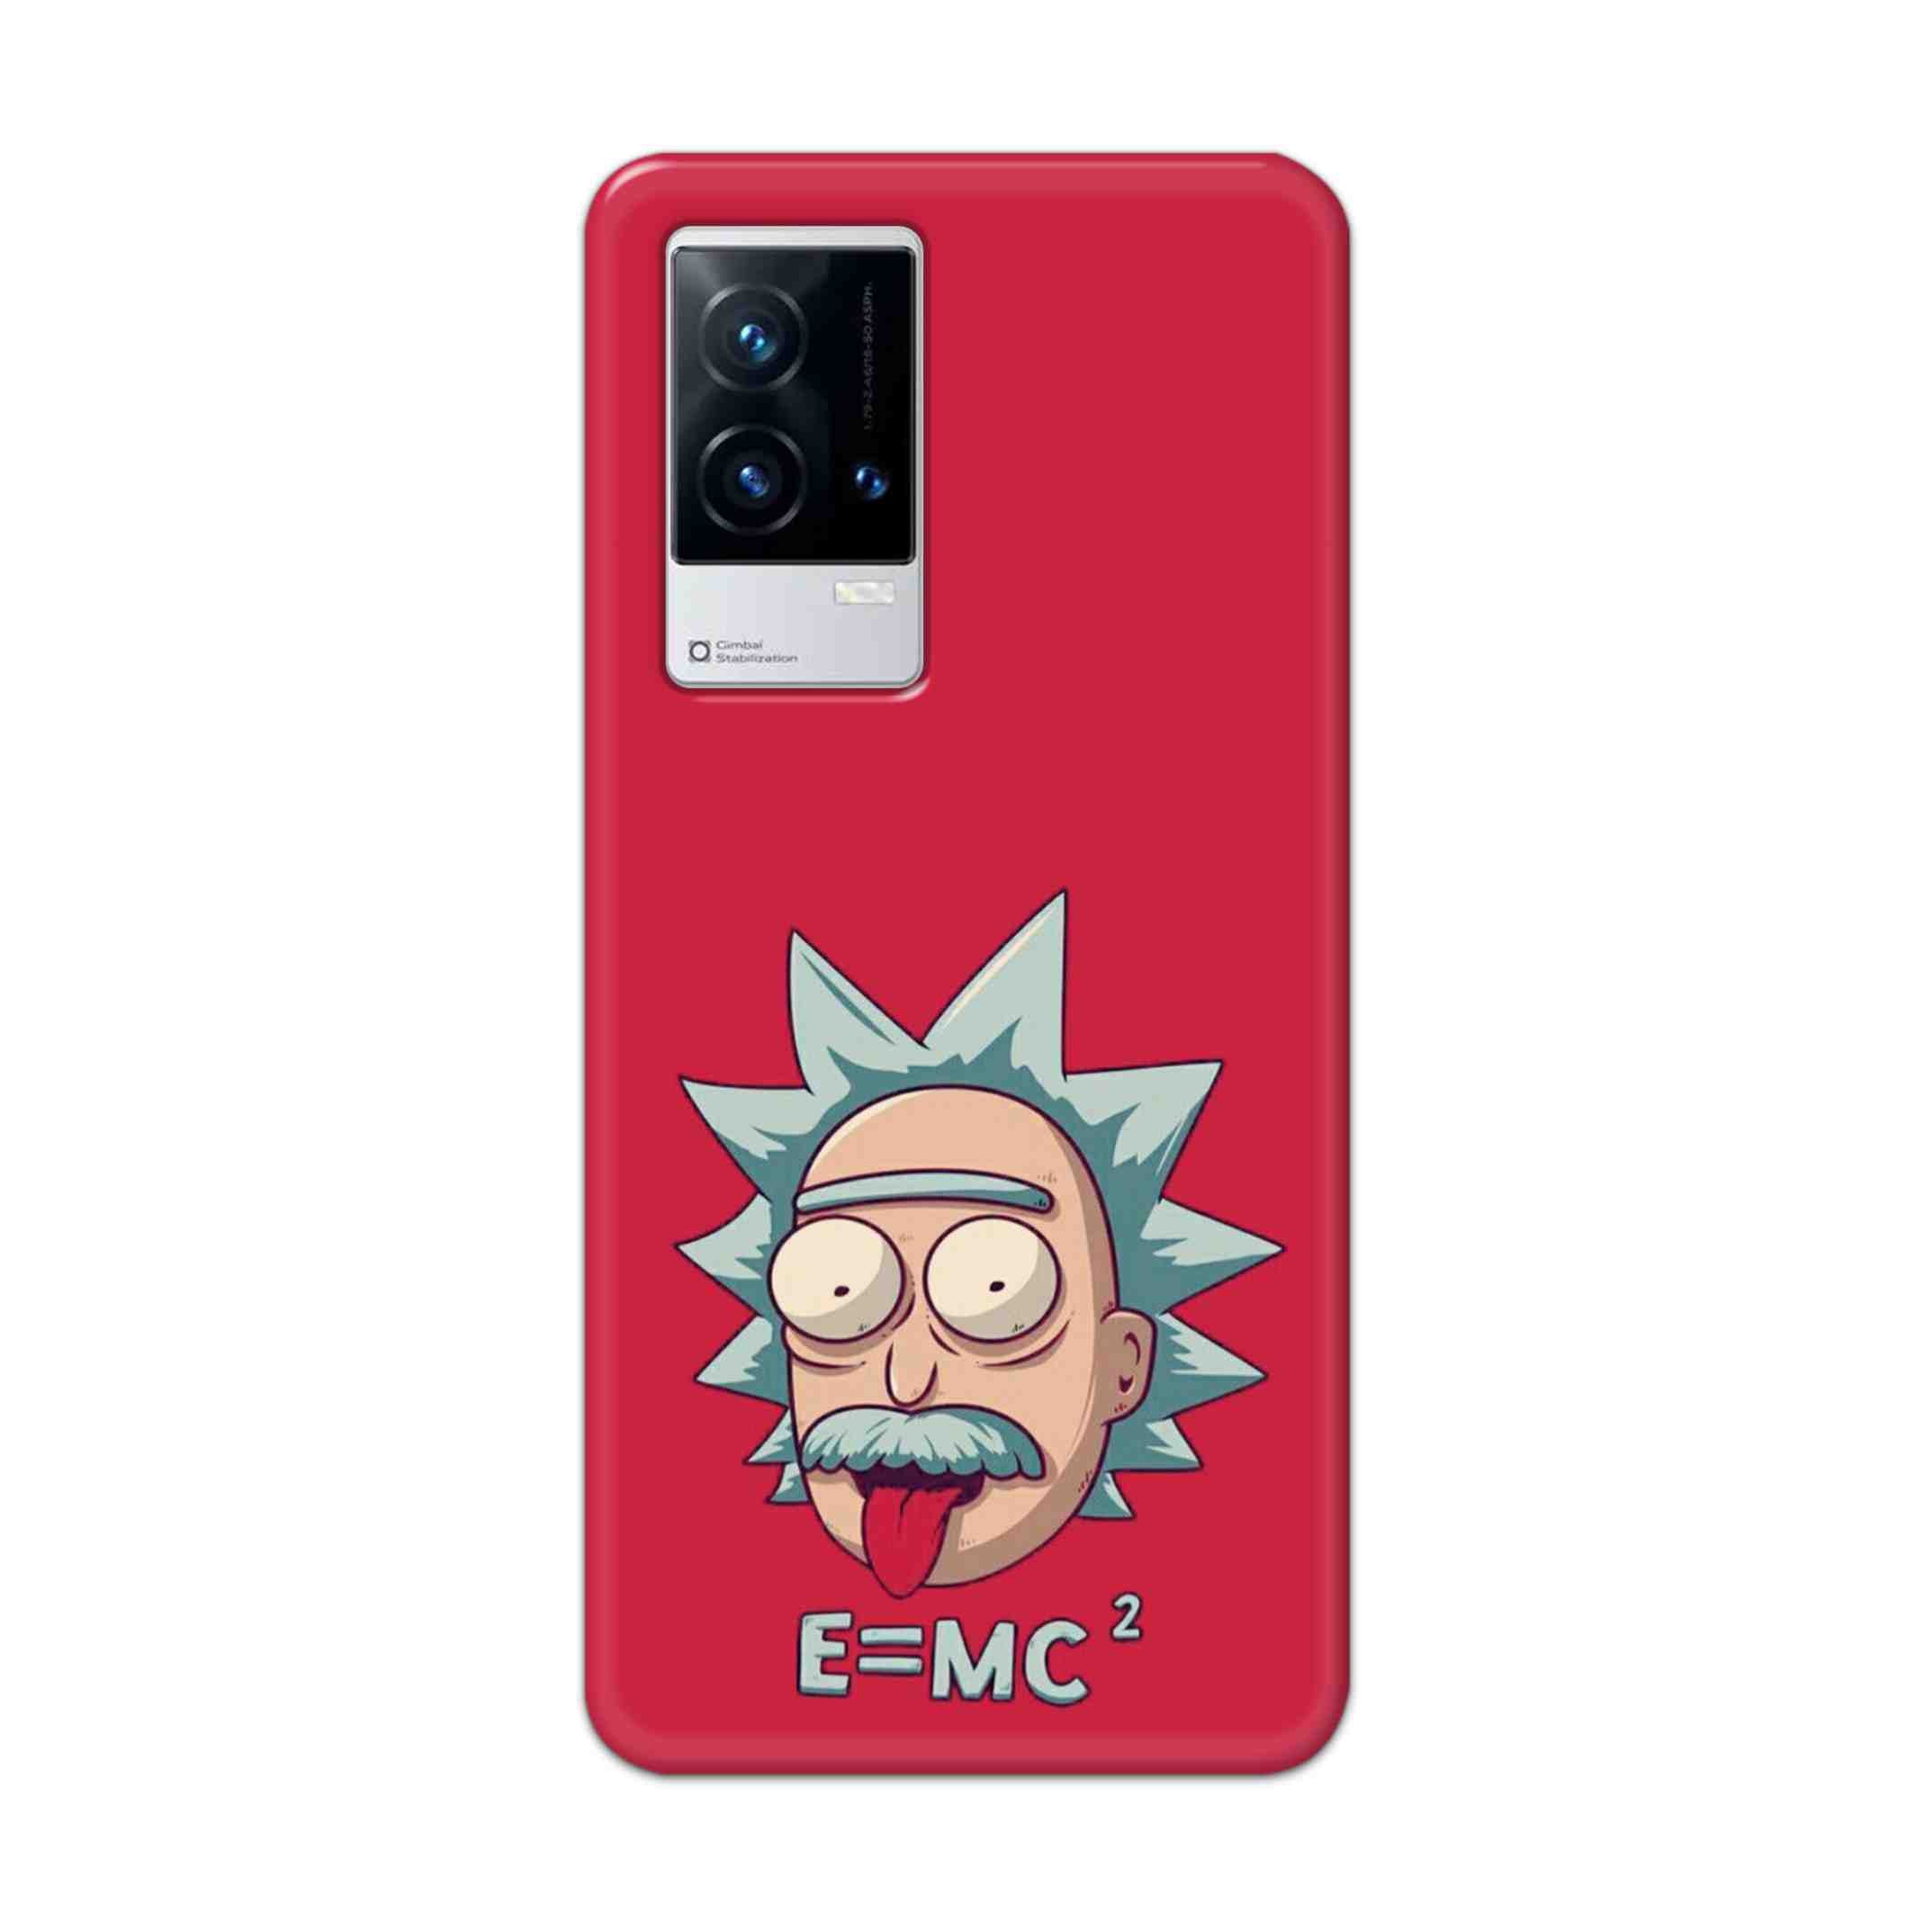 Buy E=Mc Hard Back Mobile Phone Case Cover For Vivo iQOO 9 5G Online